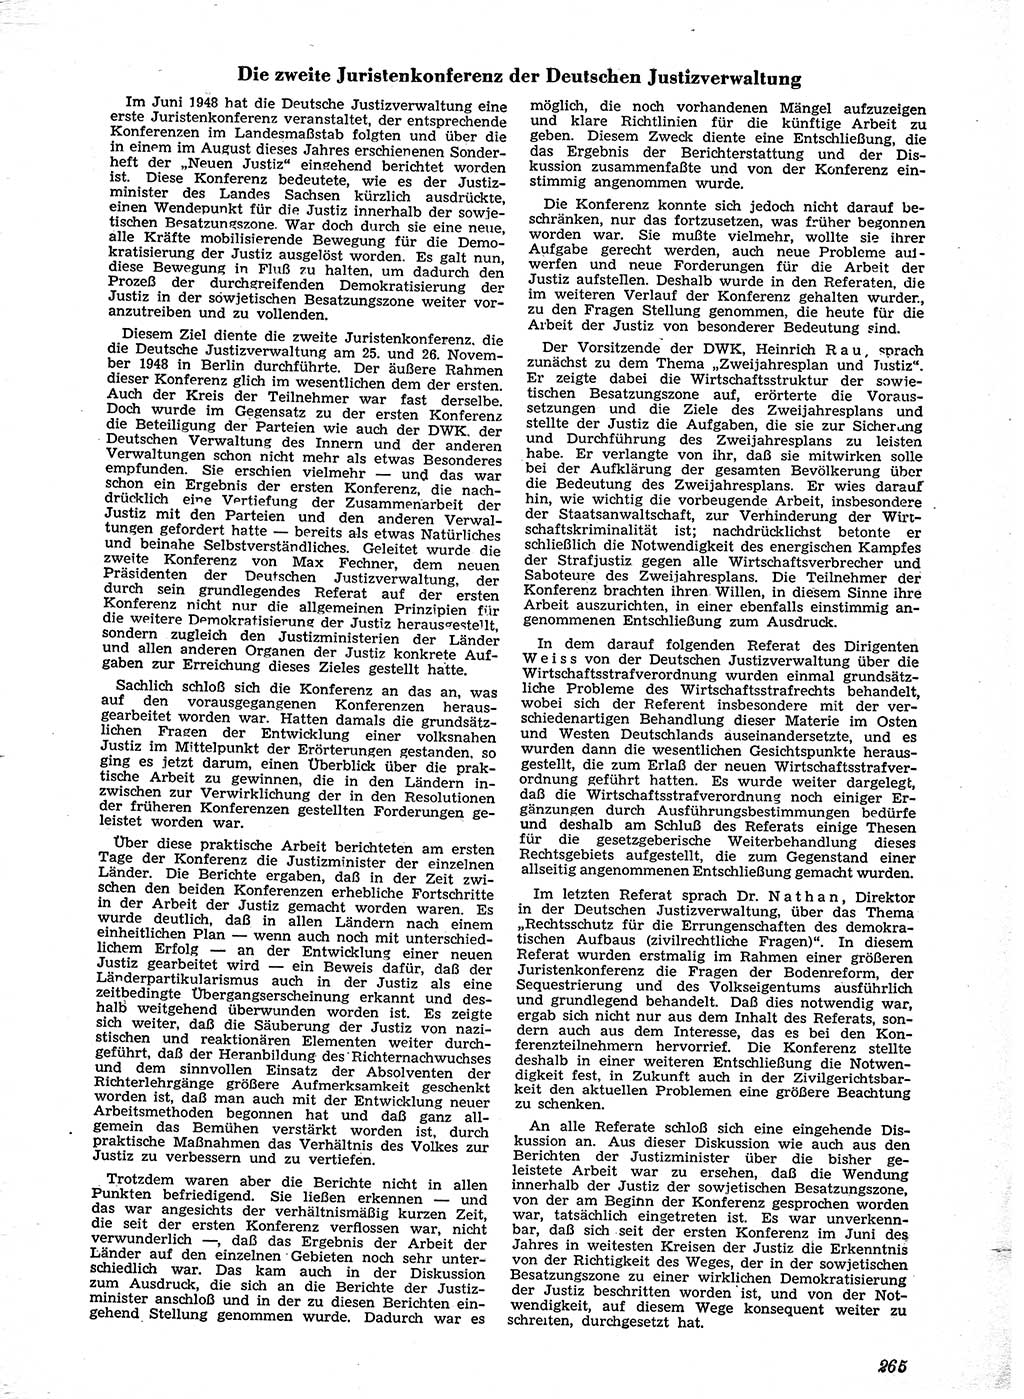 Neue Justiz (NJ), Zeitschrift für Recht und Rechtswissenschaft [Sowjetische Besatzungszone (SBZ) Deutschland], 2. Jahrgang 1948, Seite 265 (NJ SBZ Dtl. 1948, S. 265)